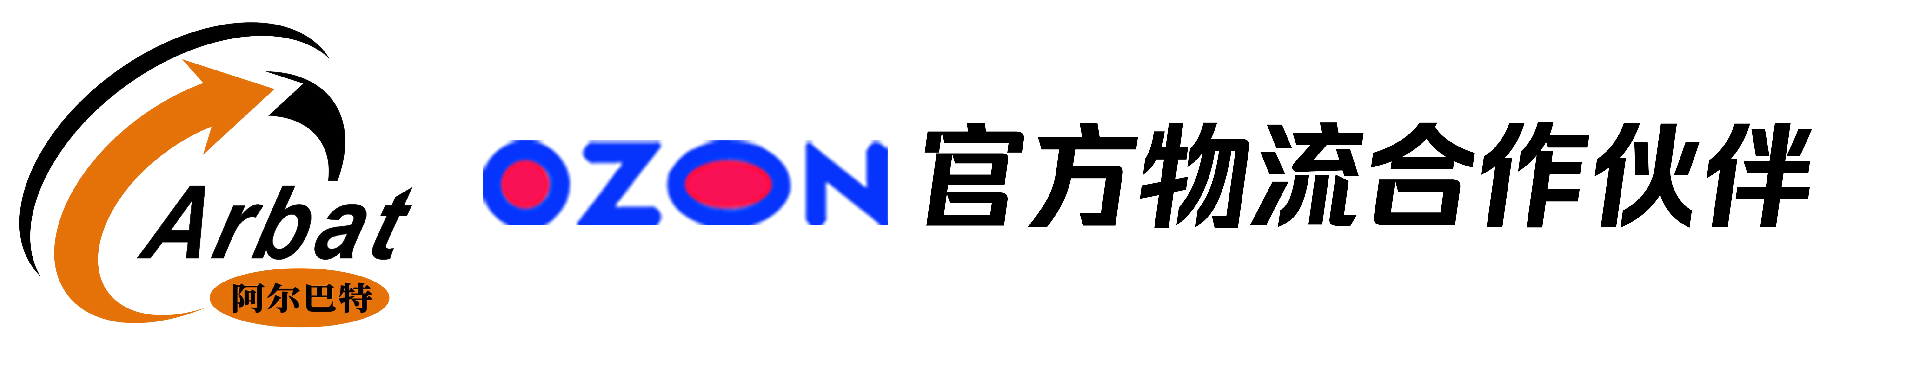 广东阿尔巴特物流有限公司-OZON官方物流合作伙伴